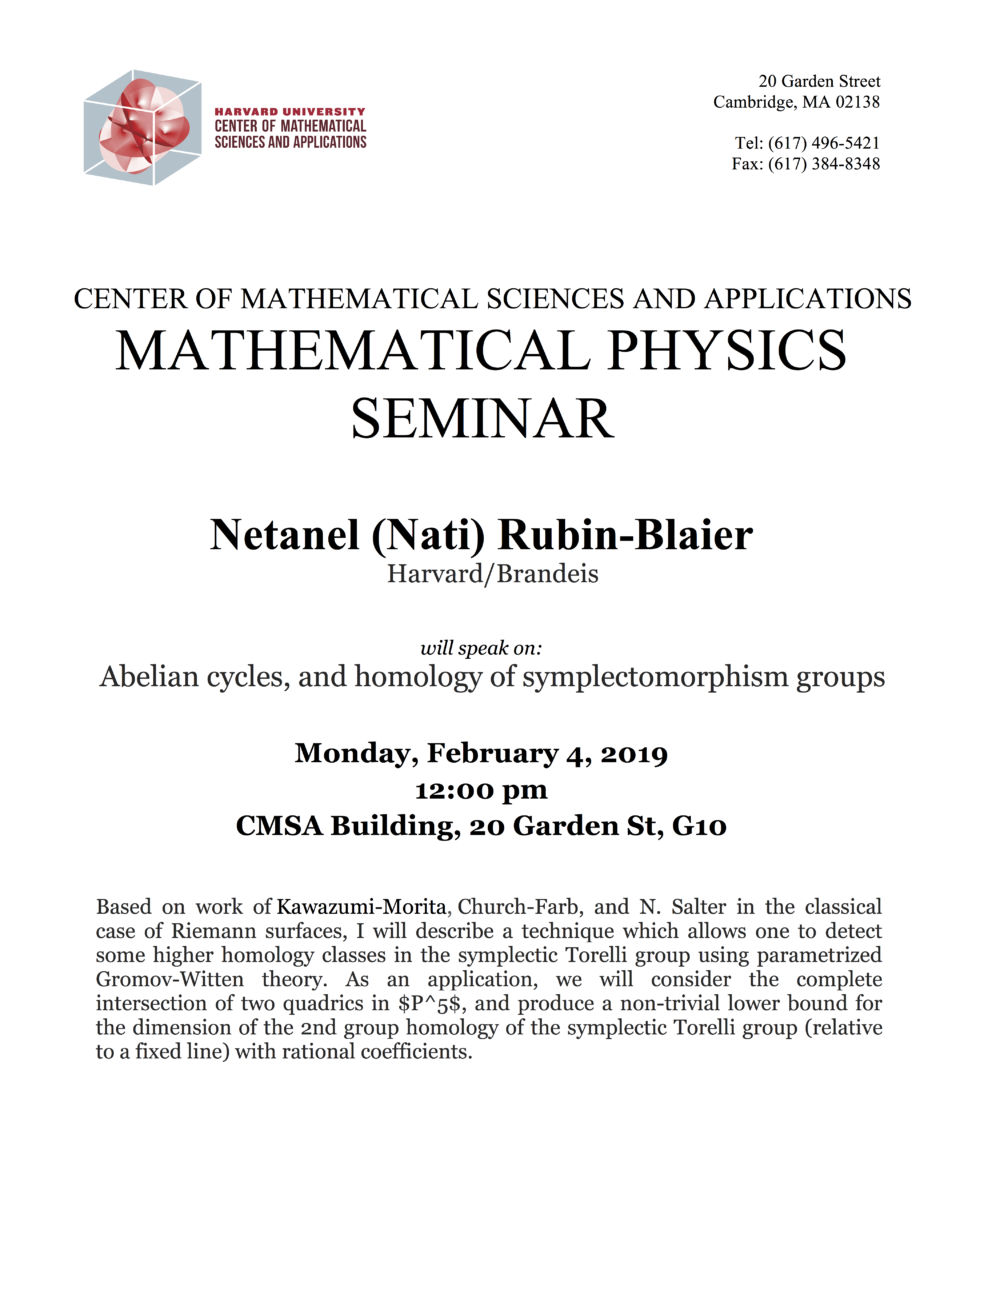 2/4/2019 Math Physics Seminar